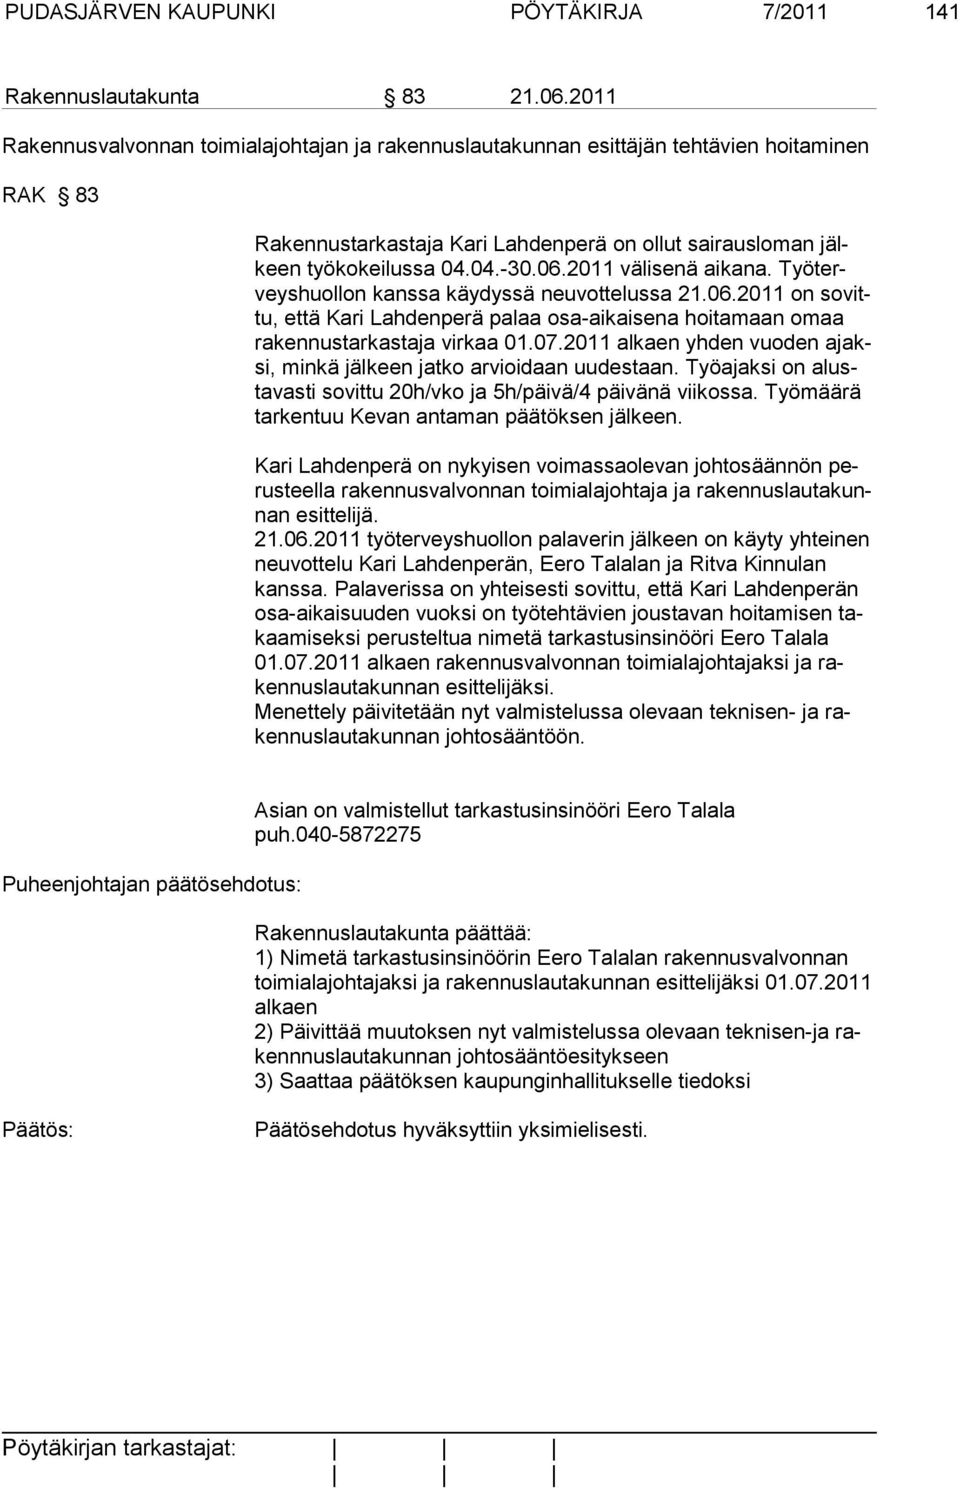 2011 välisenä aikana. Työterveyshuollon kanssa käydyssä neuvottelussa 21.06.2011 on sovittu, että Kari Lahdenperä palaa osa-aikaisena hoitamaan omaa rakennustarkastaja virkaa 01.07.